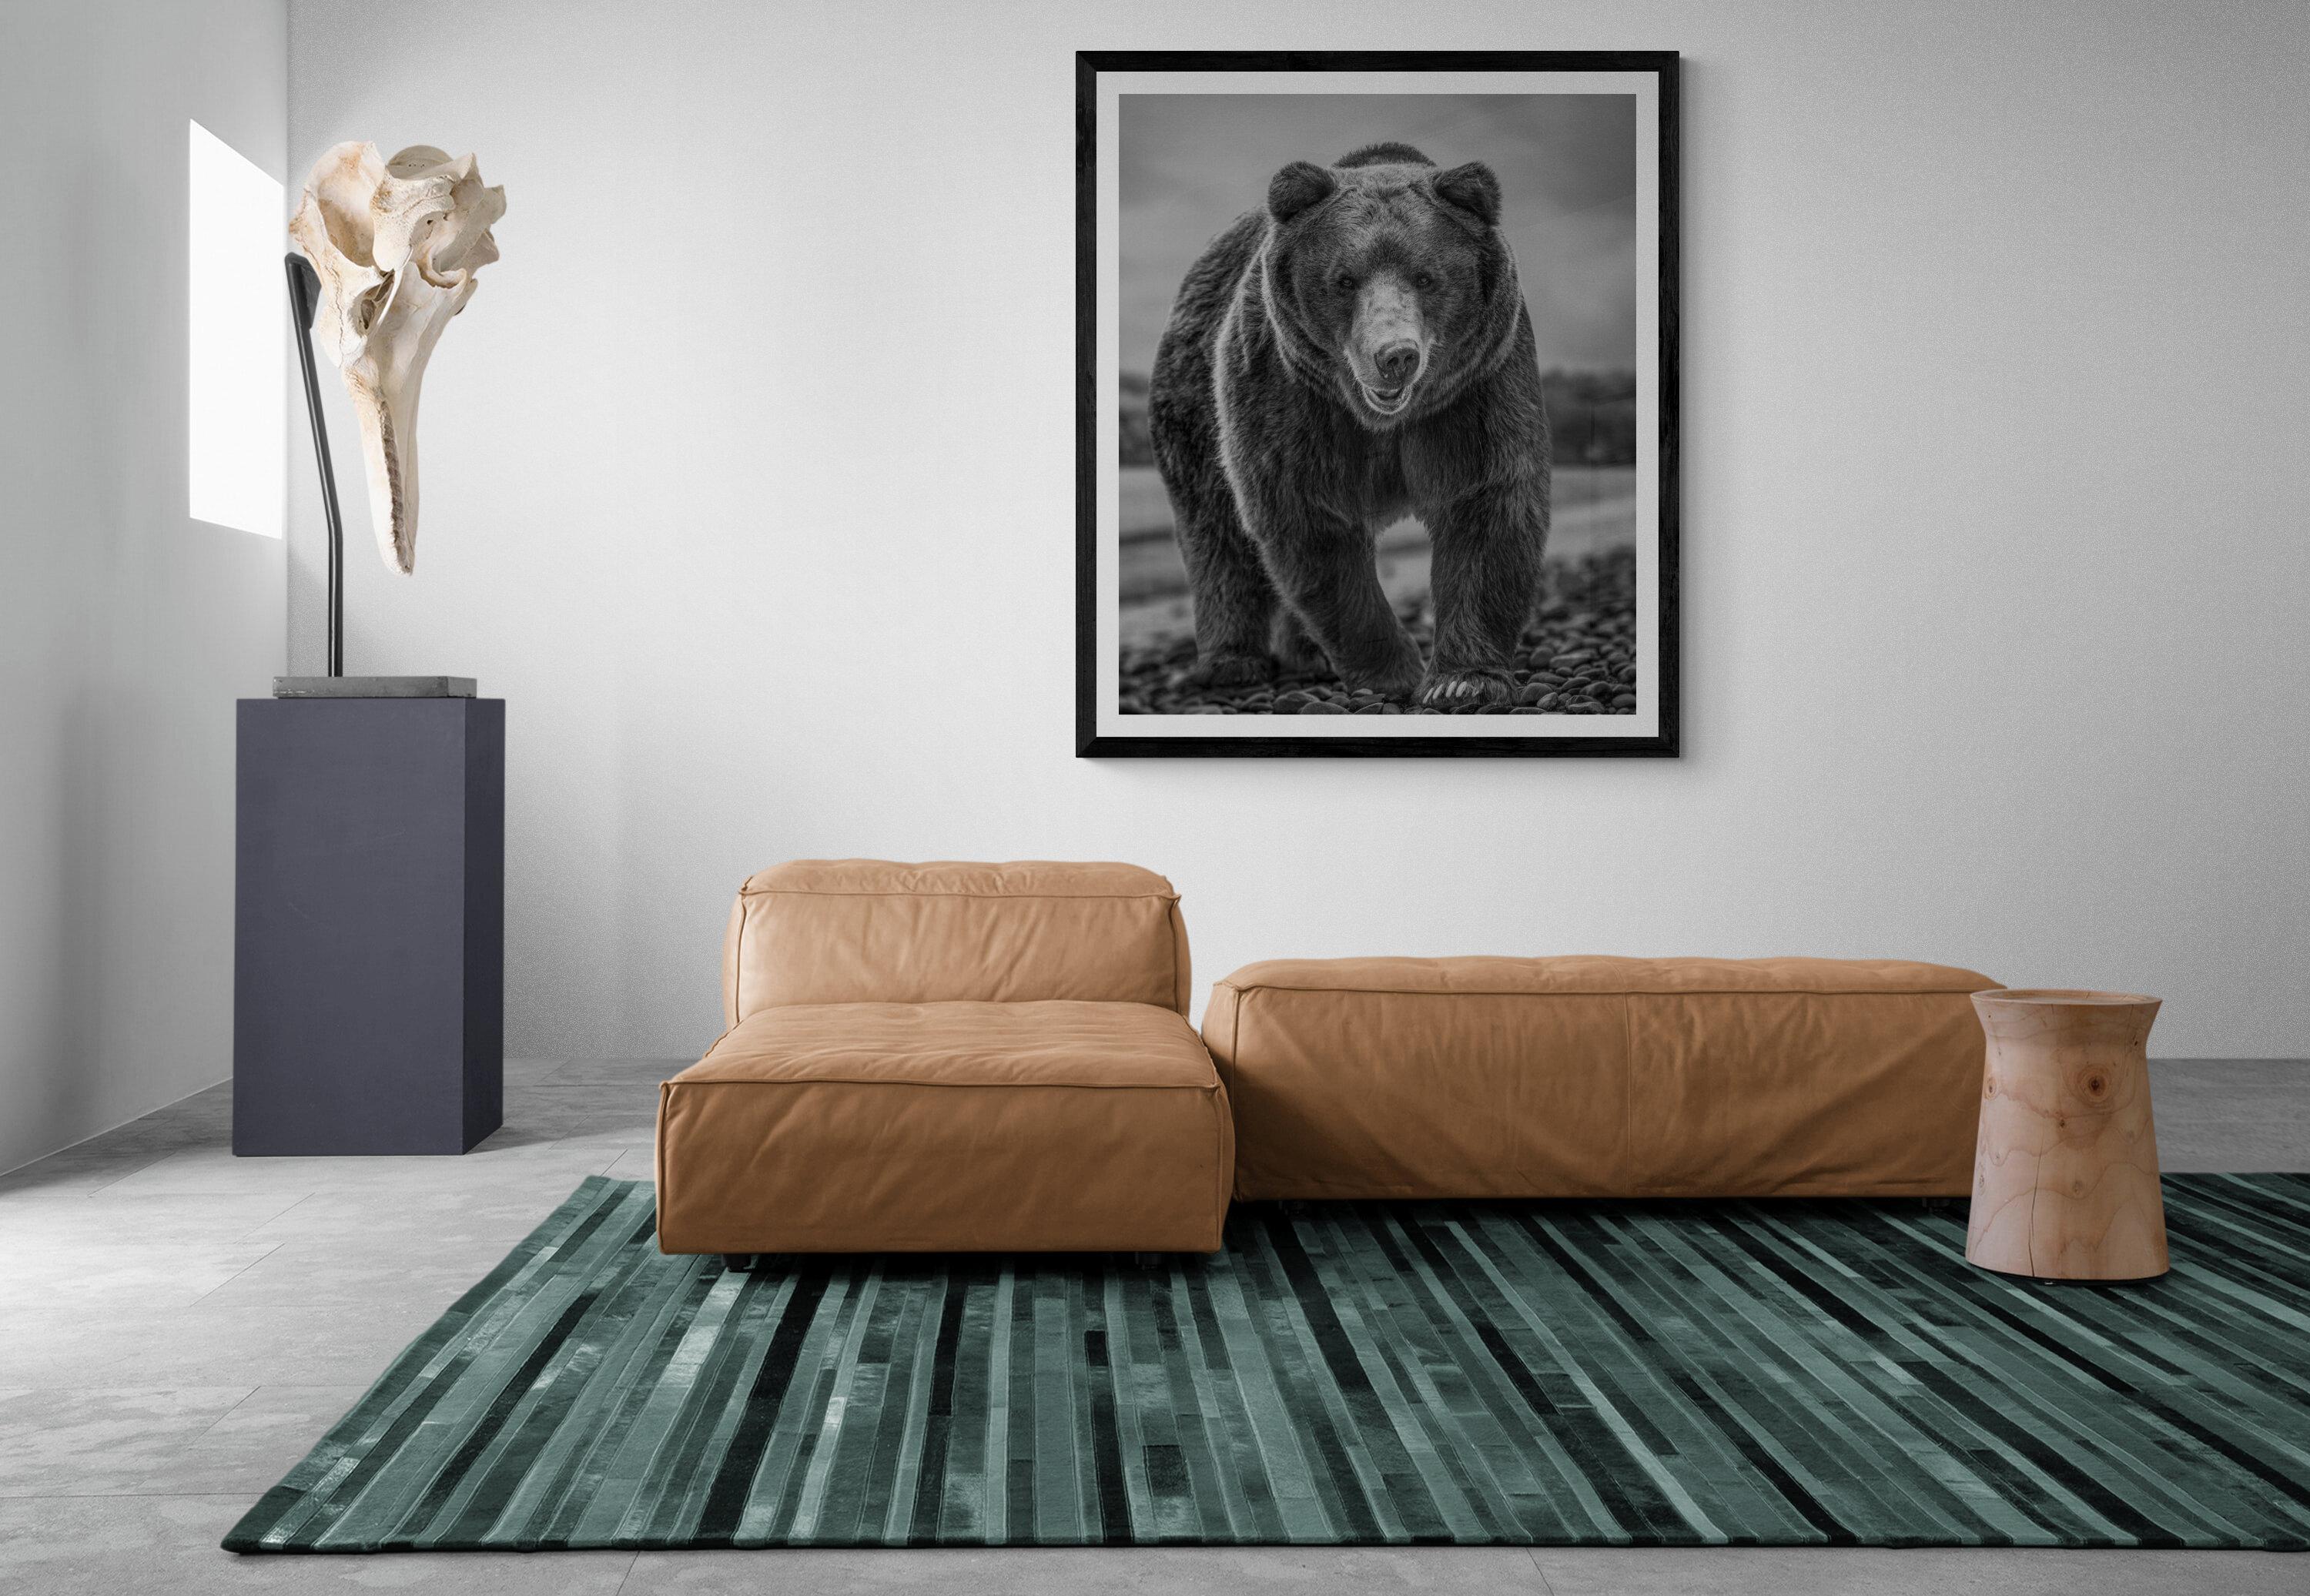 Dies ist ein zeitgenössisches Foto eines Braunbären.  
Dies wurde 2019 auf Kodiak Island gedreht. 
36x48 Ohne Vorzeichen
Archivalisches Pigmentpapier 
Archivtinten
Einrahmung verfügbar. Erkundigen Sie sich nach den Preisen. 


Shane Russeck hat sich